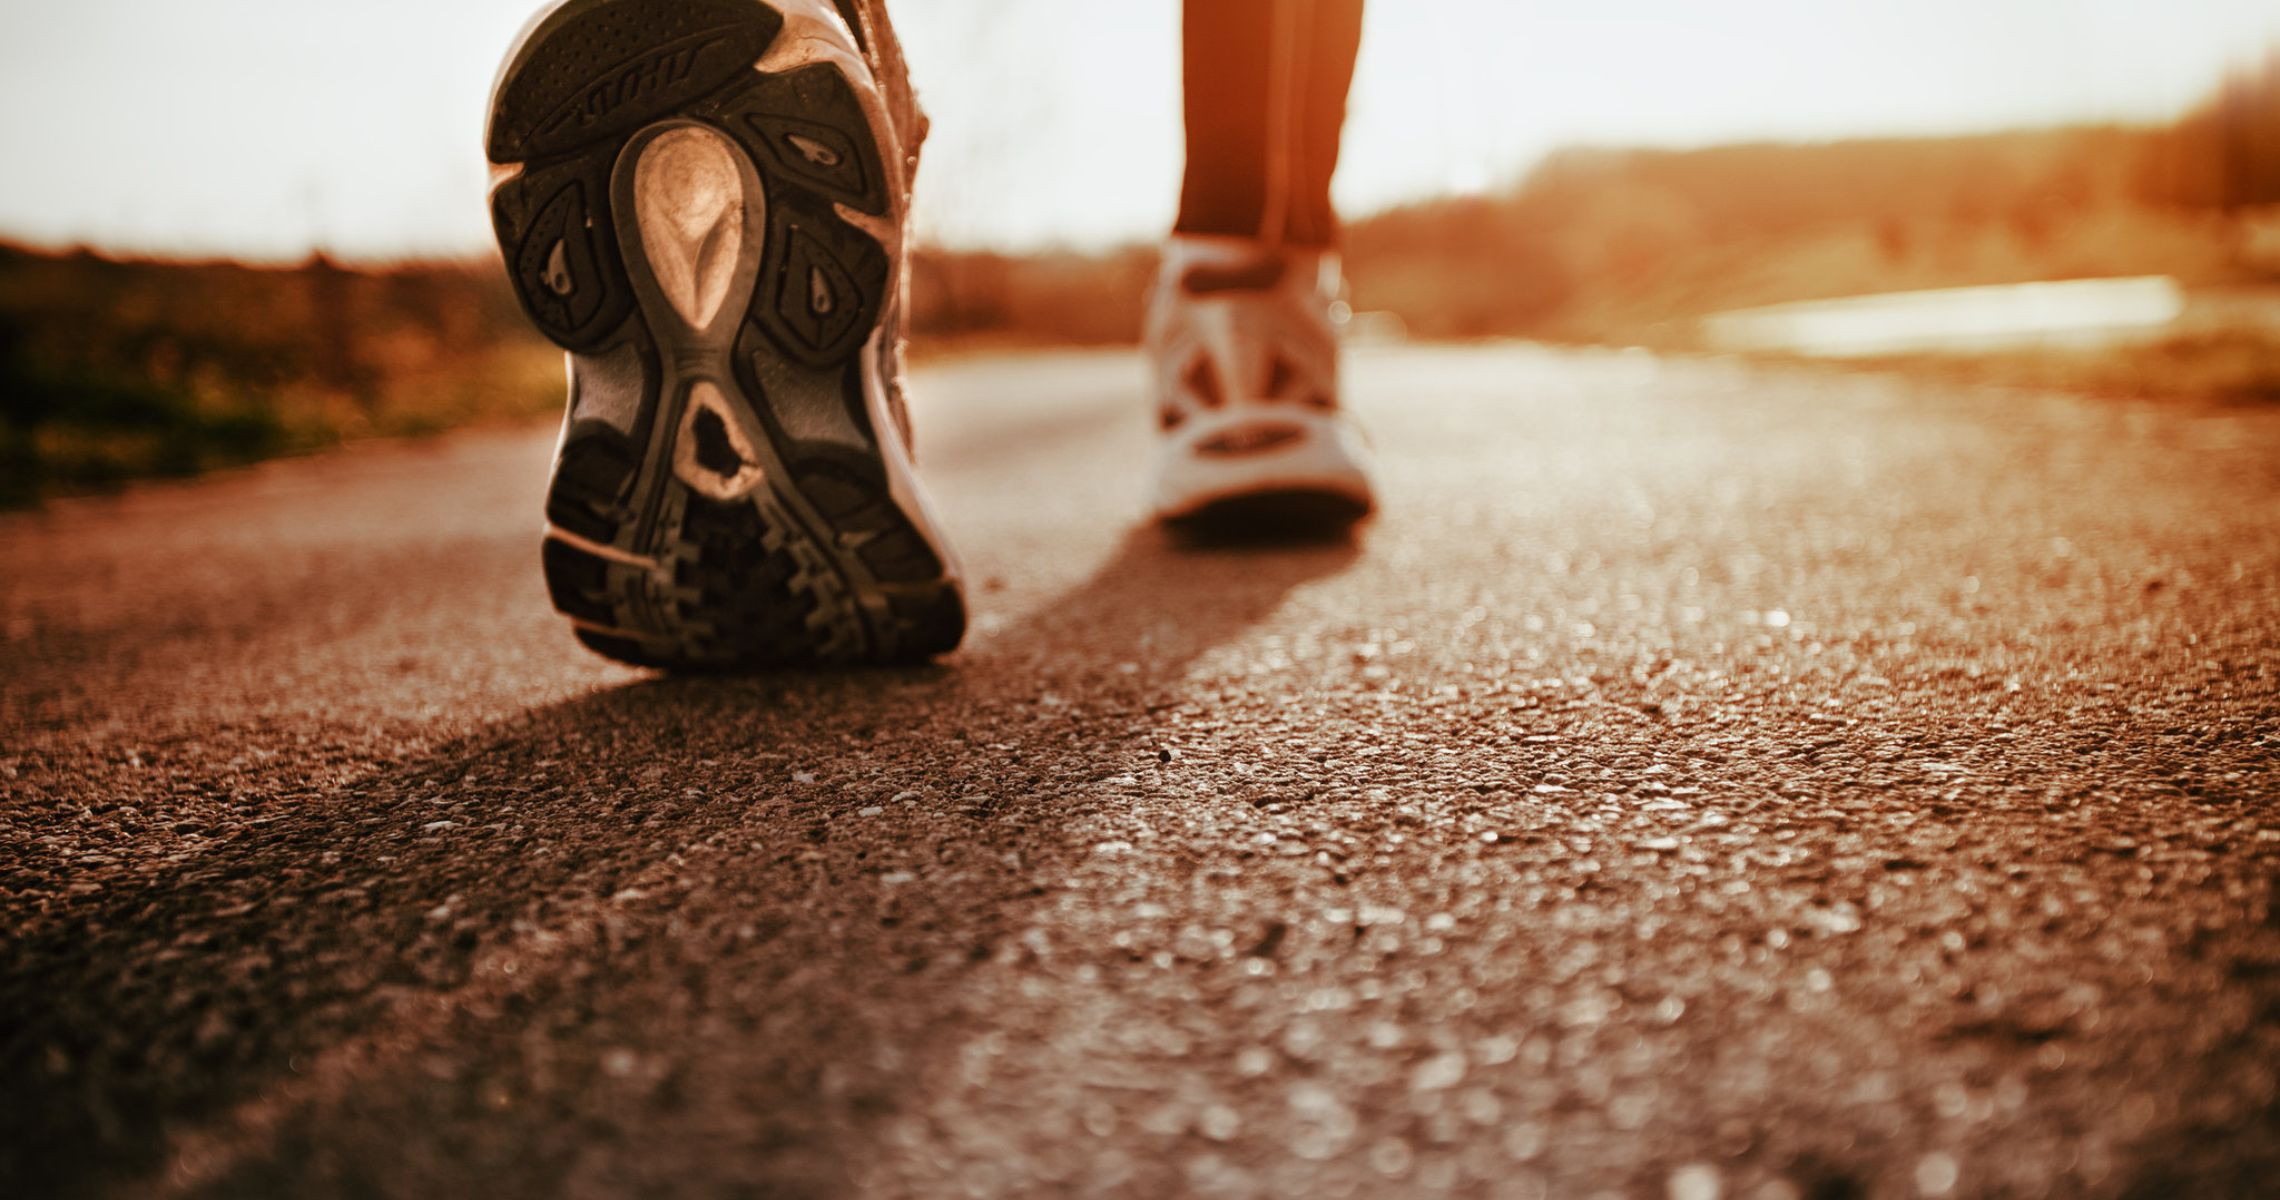 Chạy bộ và đi bộ có giảm béo không? Vì sao?